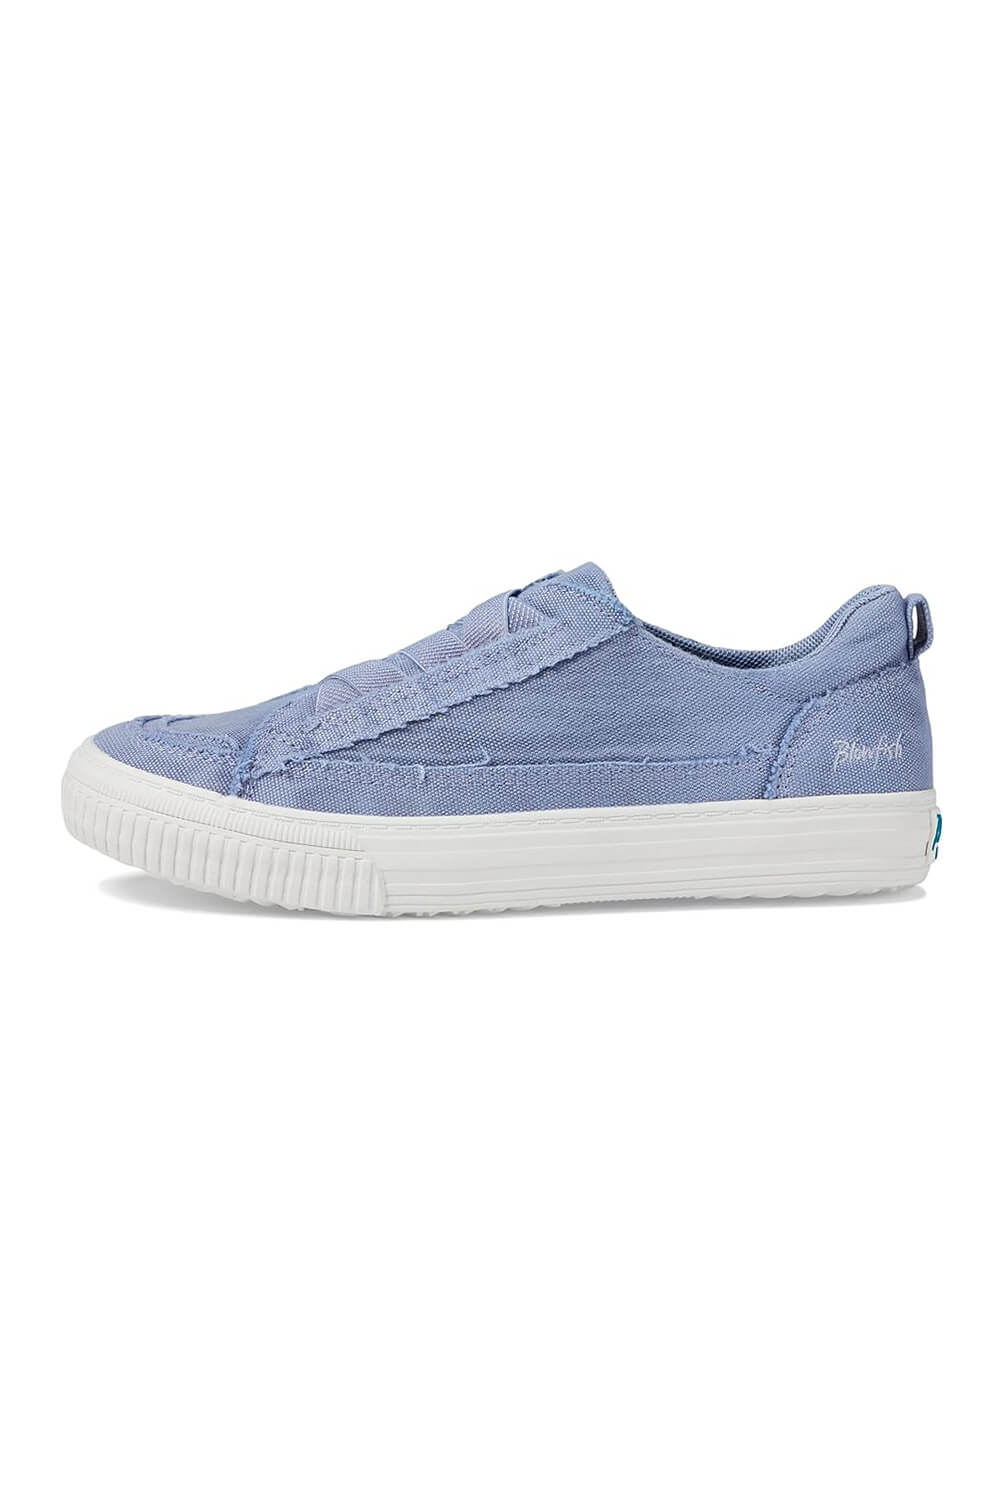 Blowfish Malibu Aztek Sneakers for Women in Blue | ZS-1786-583